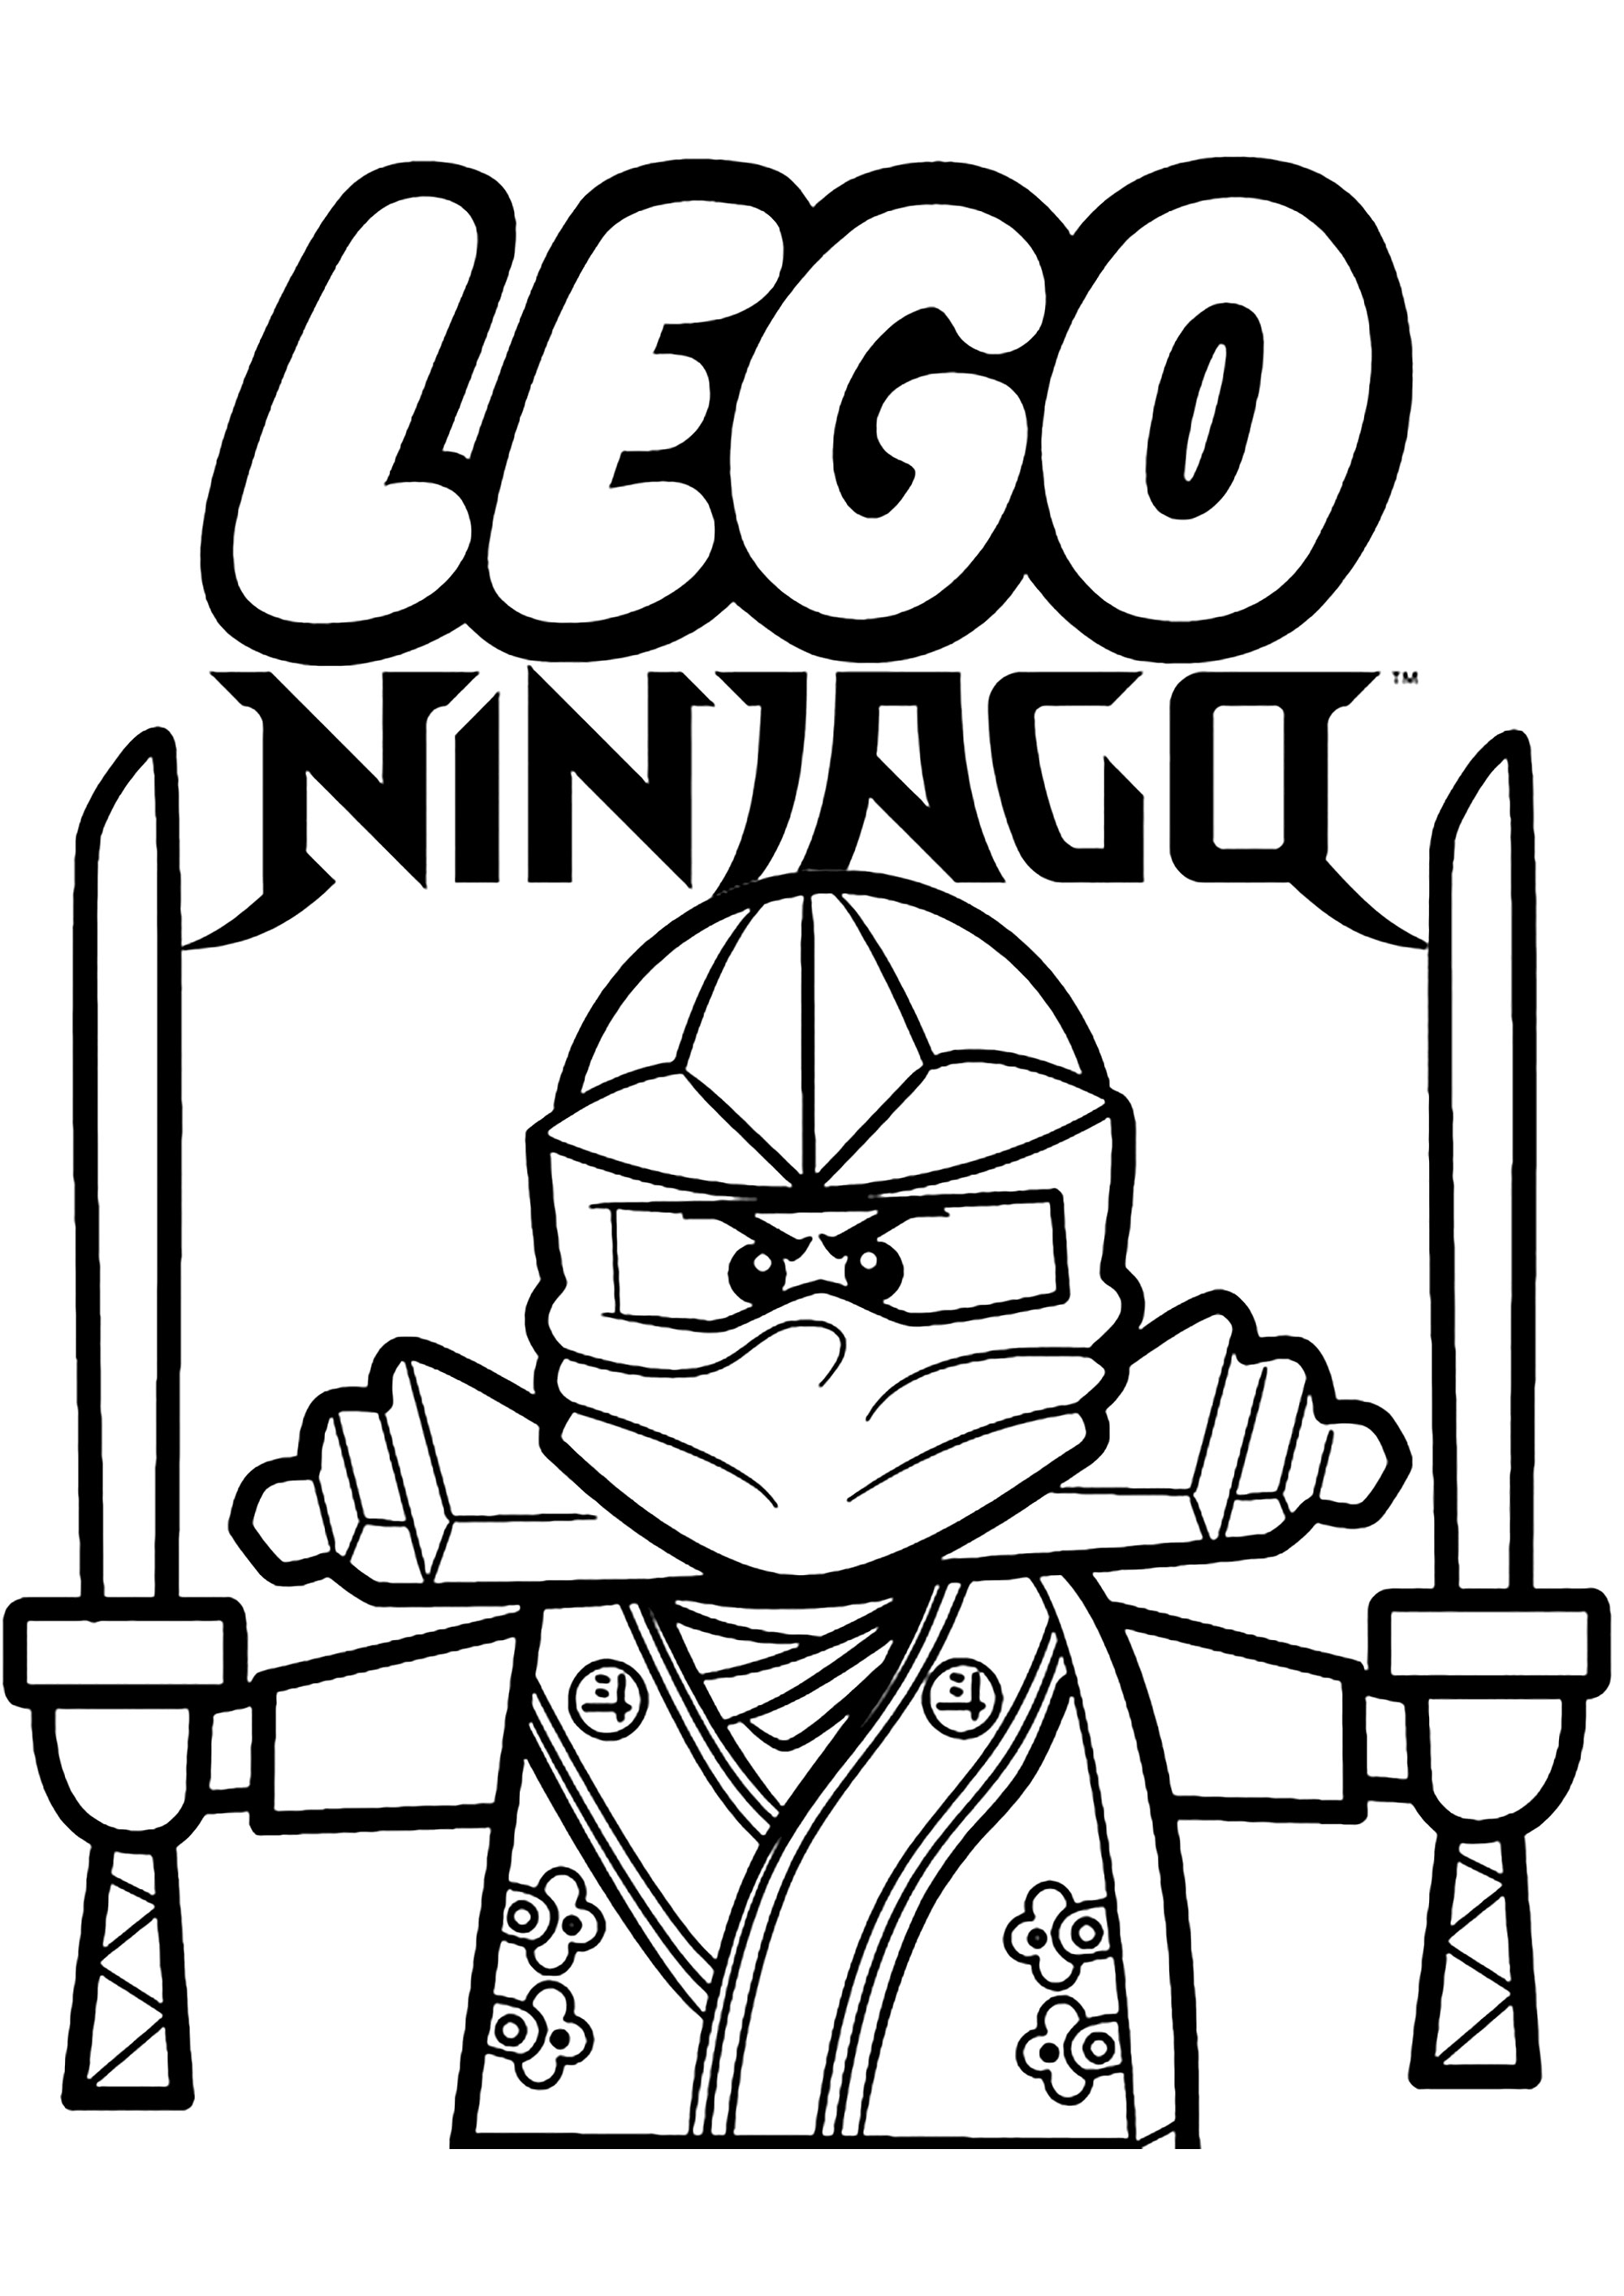 Lego ninjago character with two katanas